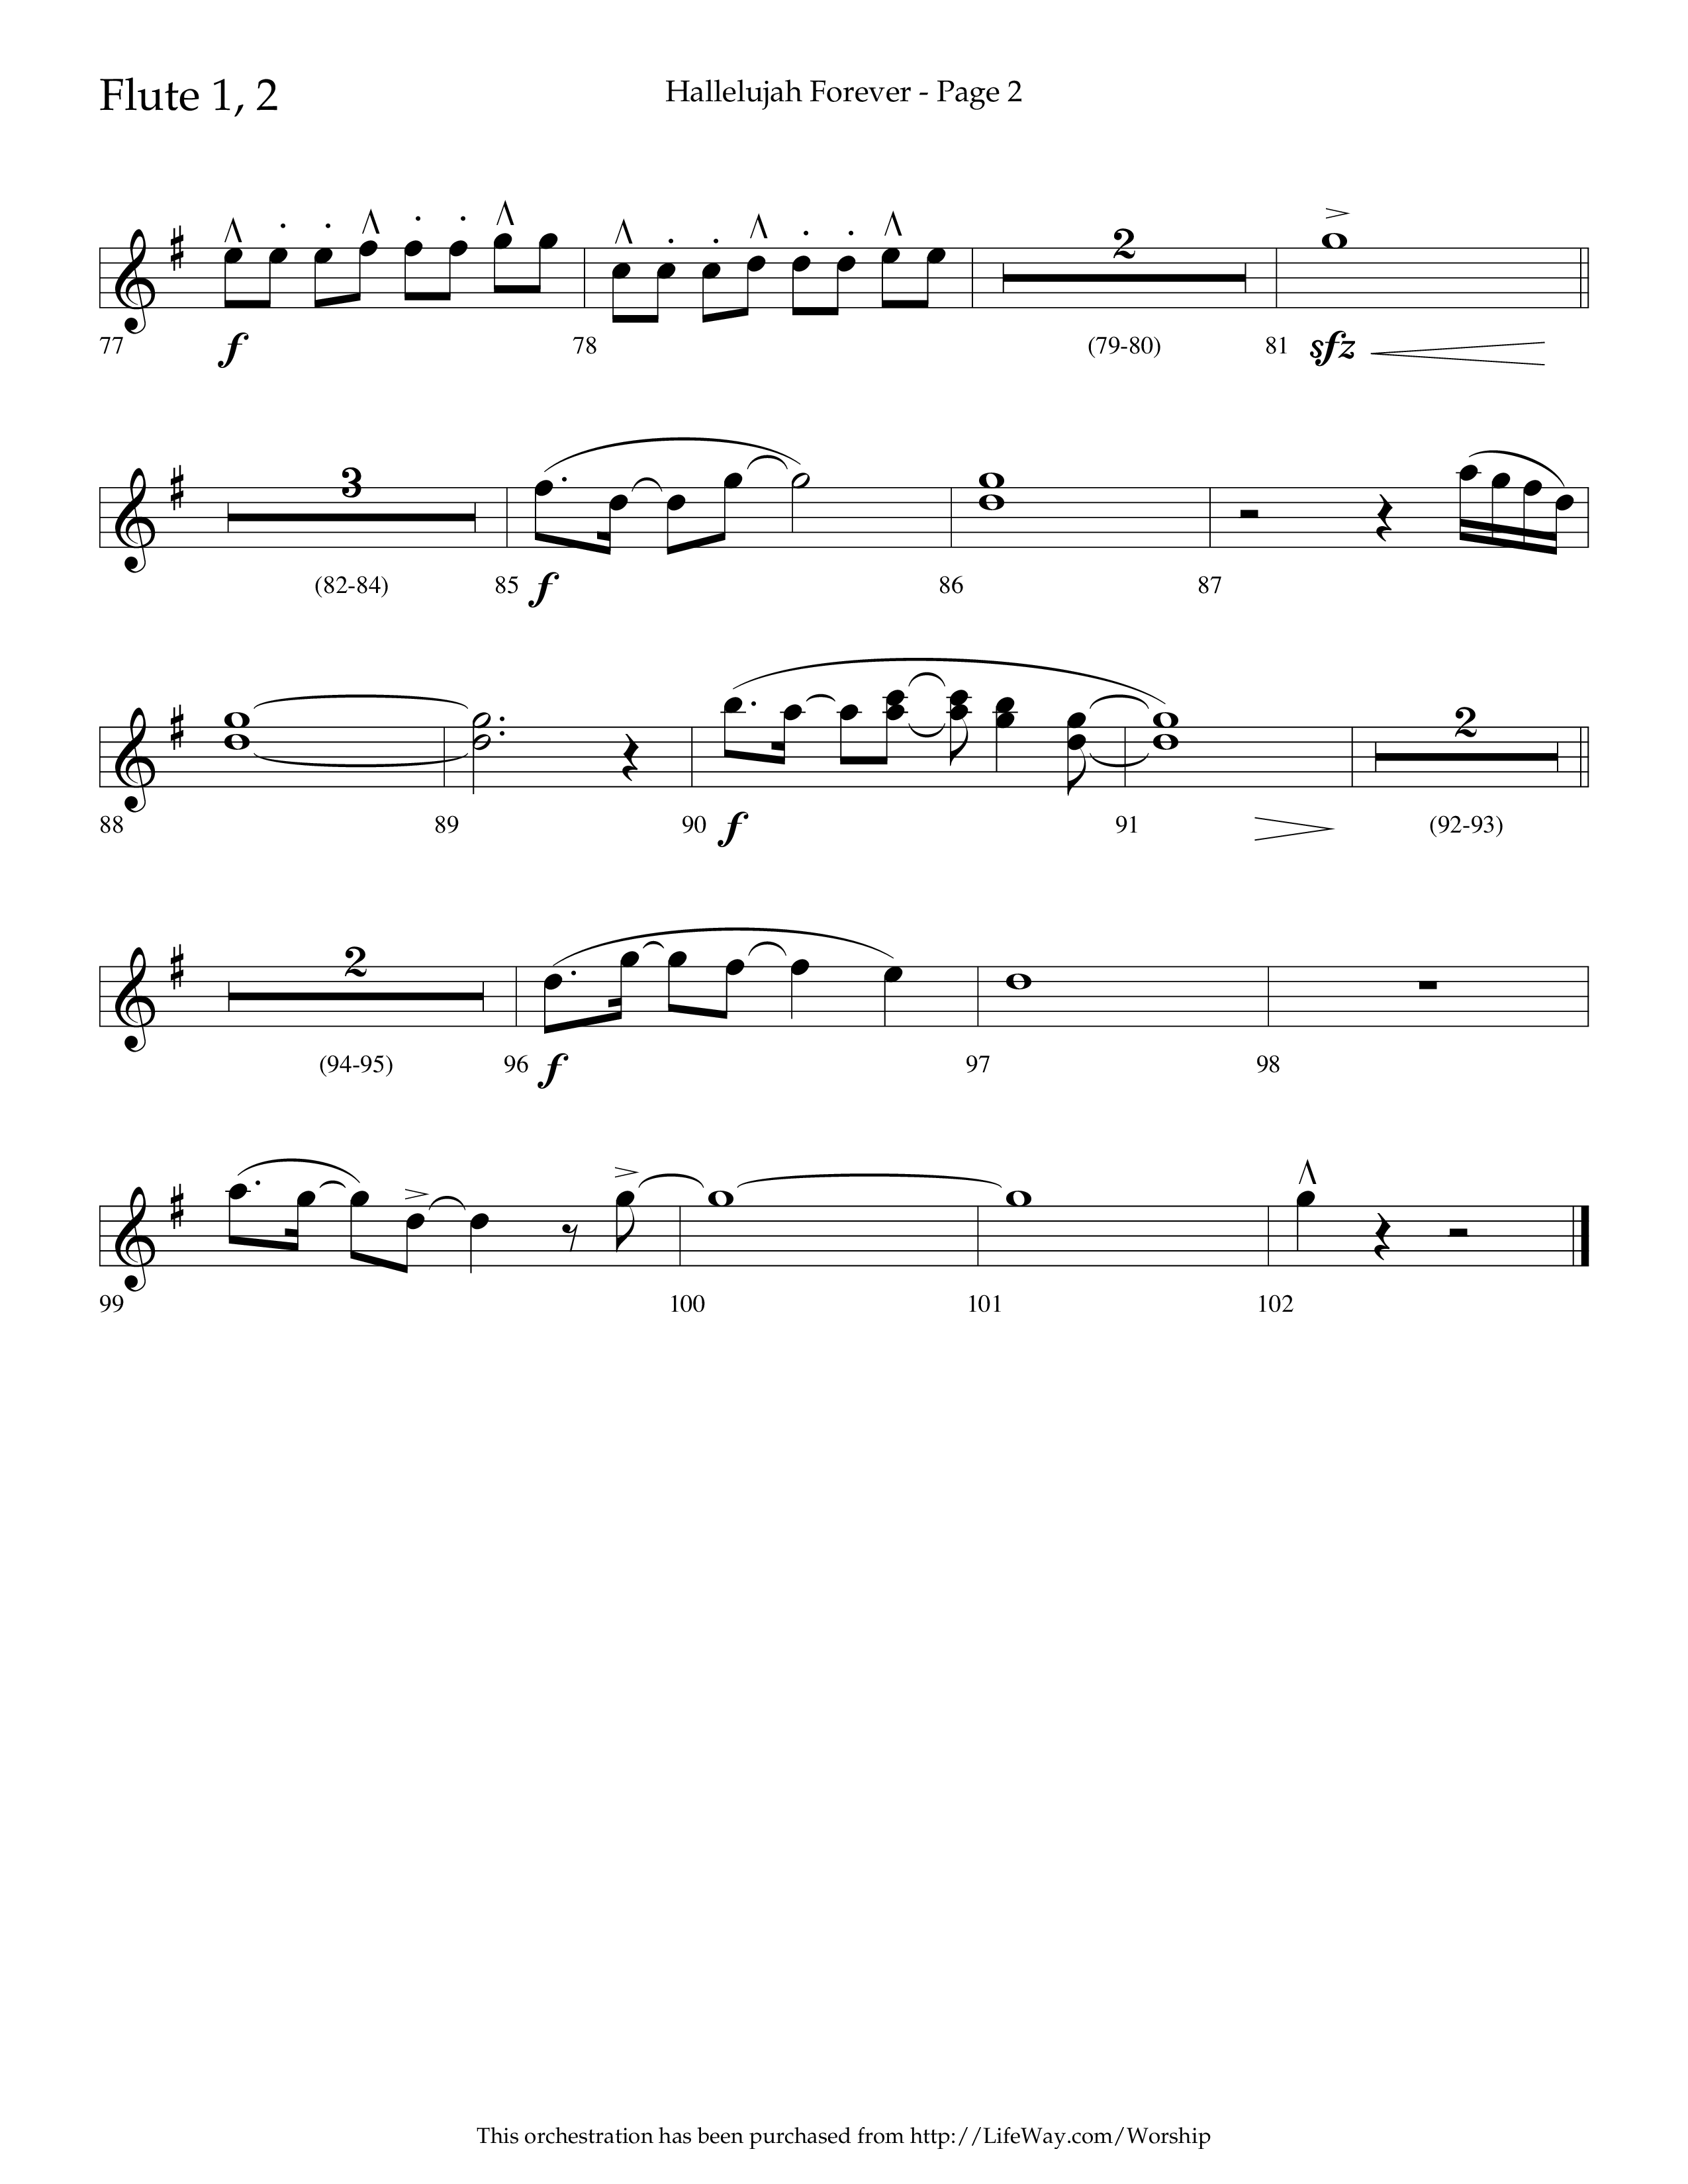 Hallelujah Forever (Choral Anthem SATB) Flute 1/2 (Lifeway Choral / Arr. Cliff Duren)